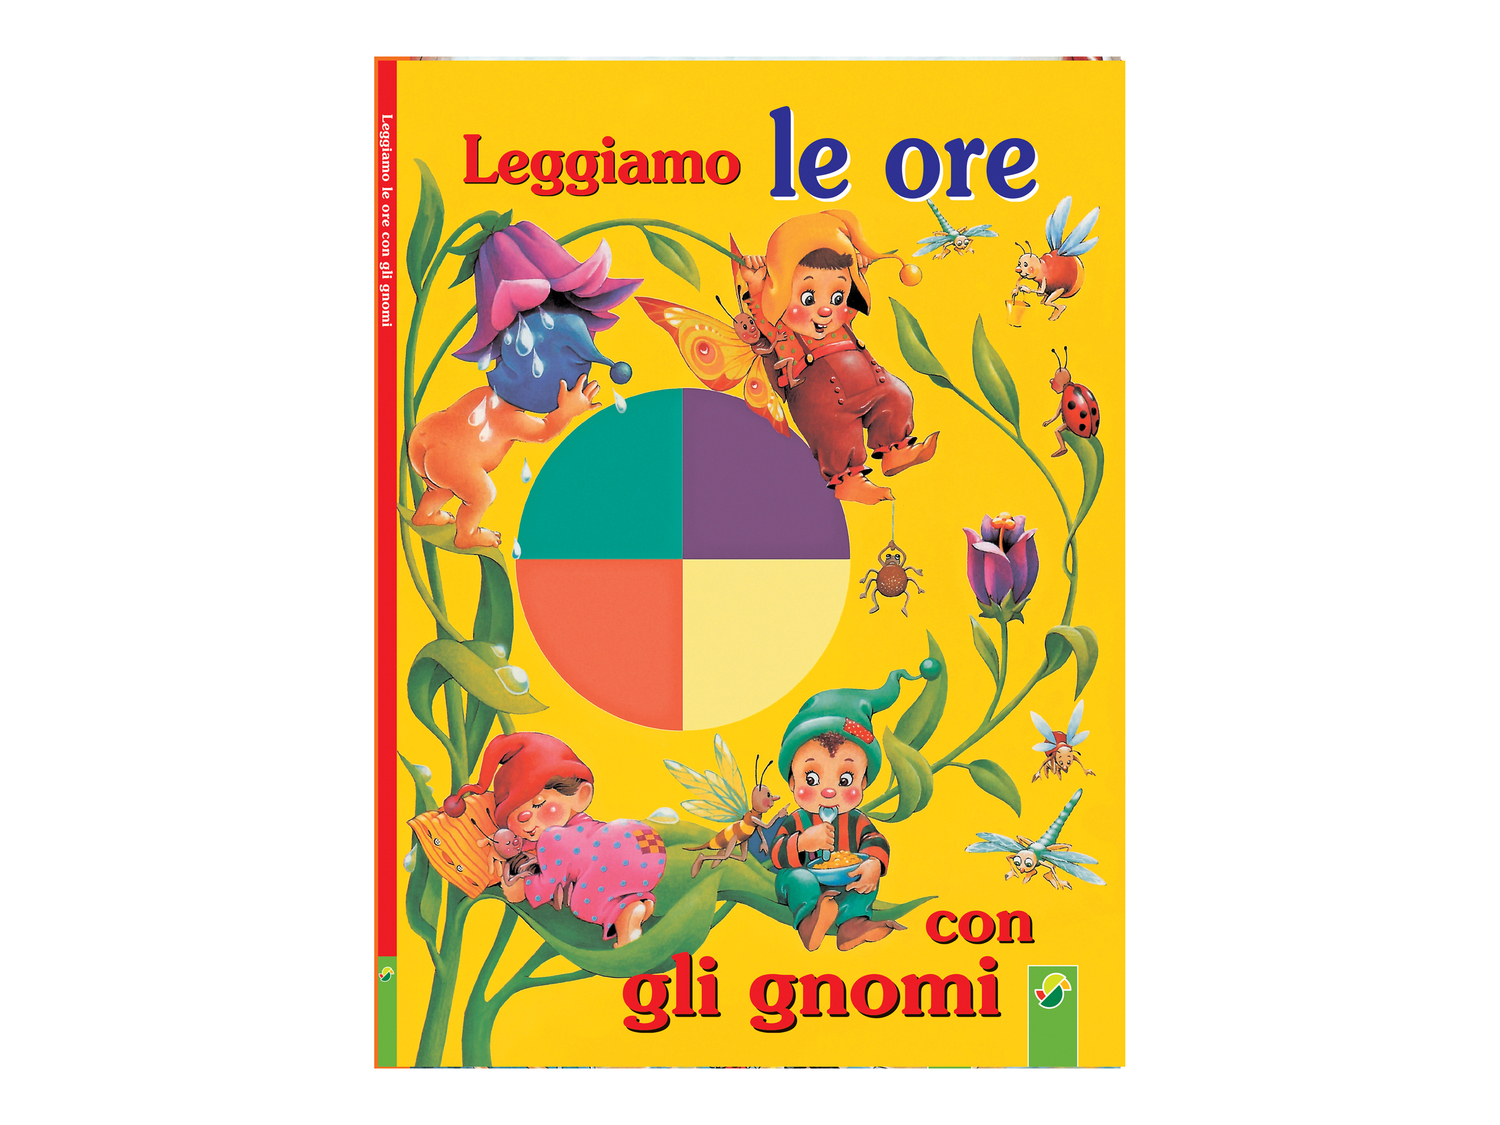 Libro per bambini Fsc, prezzo 3.99 €  

Caratteristiche